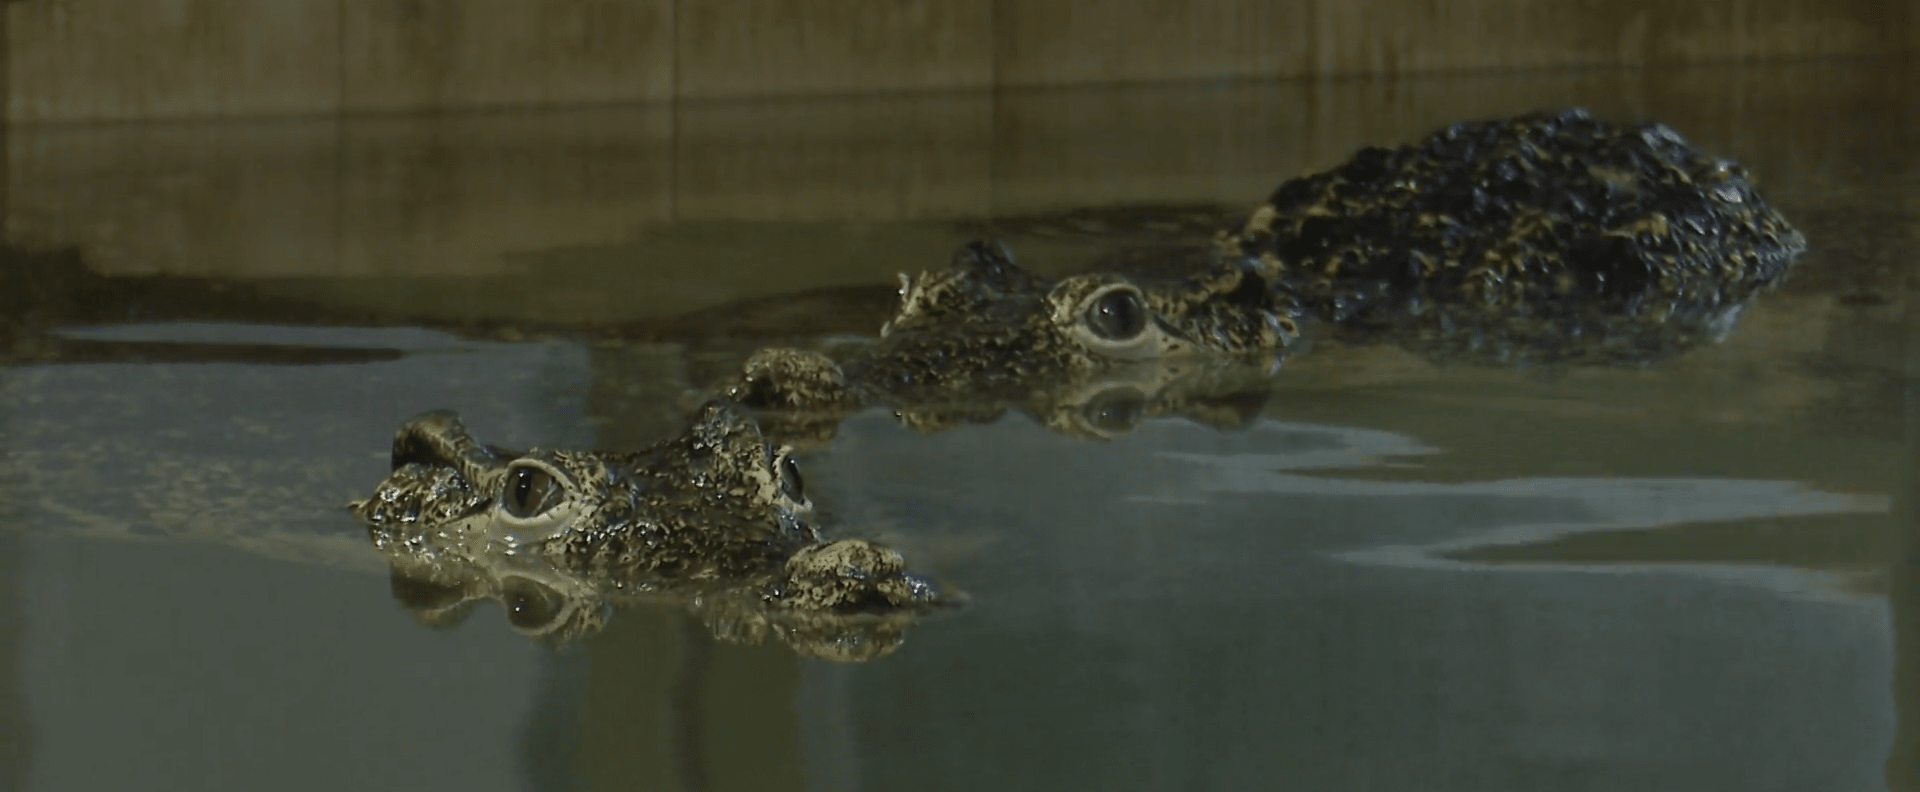 V Protivíně Chovají 23 druhů krokodýlů